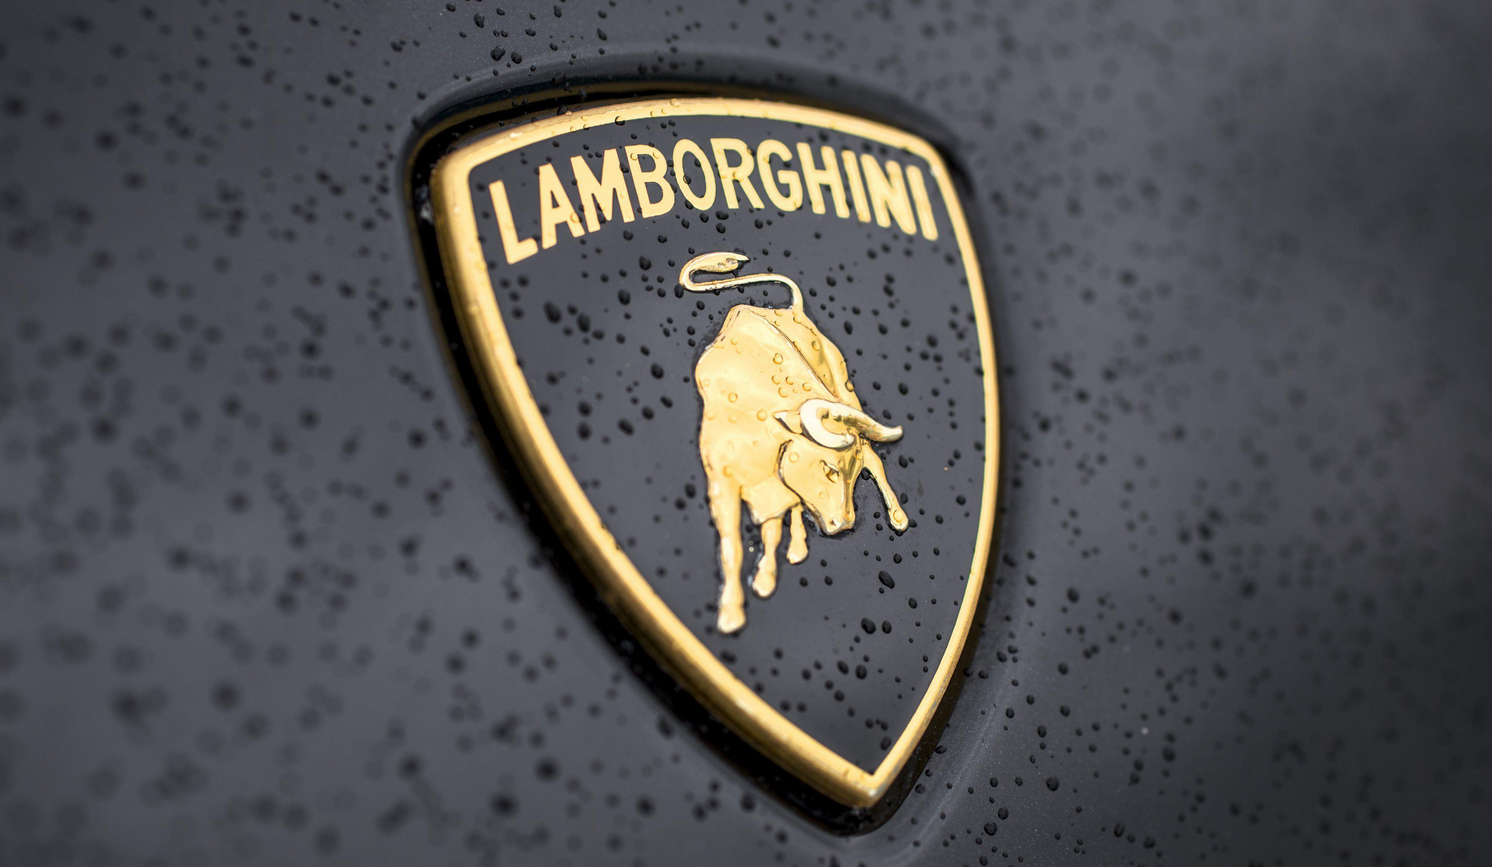 Lamborghini réalise une performance exceptionnelle en dépassant son record de ventes